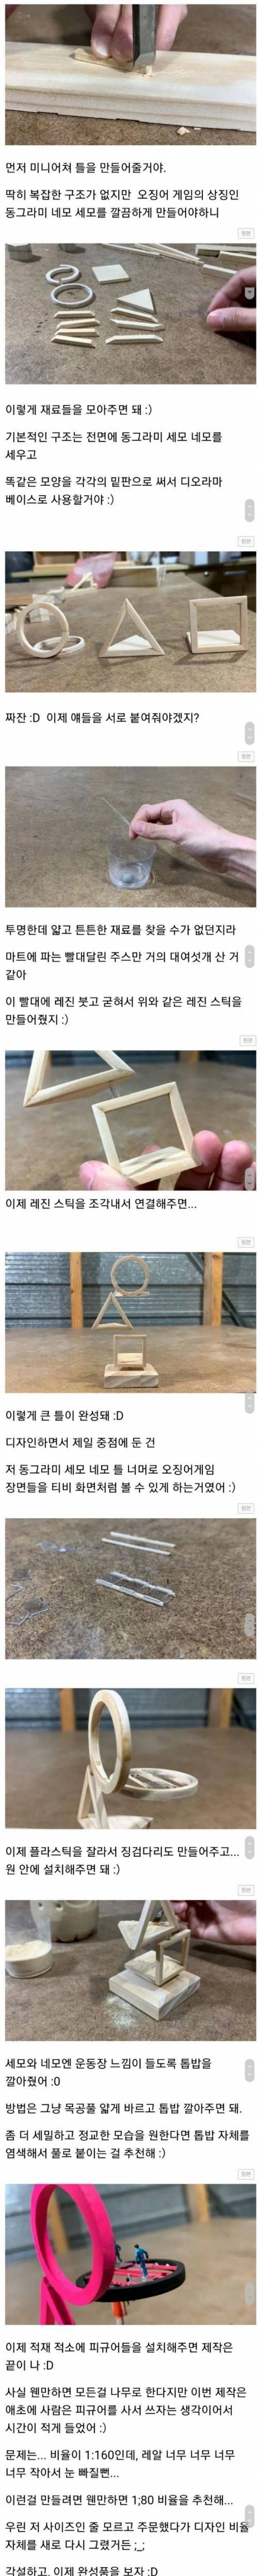 [스압] 오징에게임 3단 미니어처 만든 디씨인.jpg